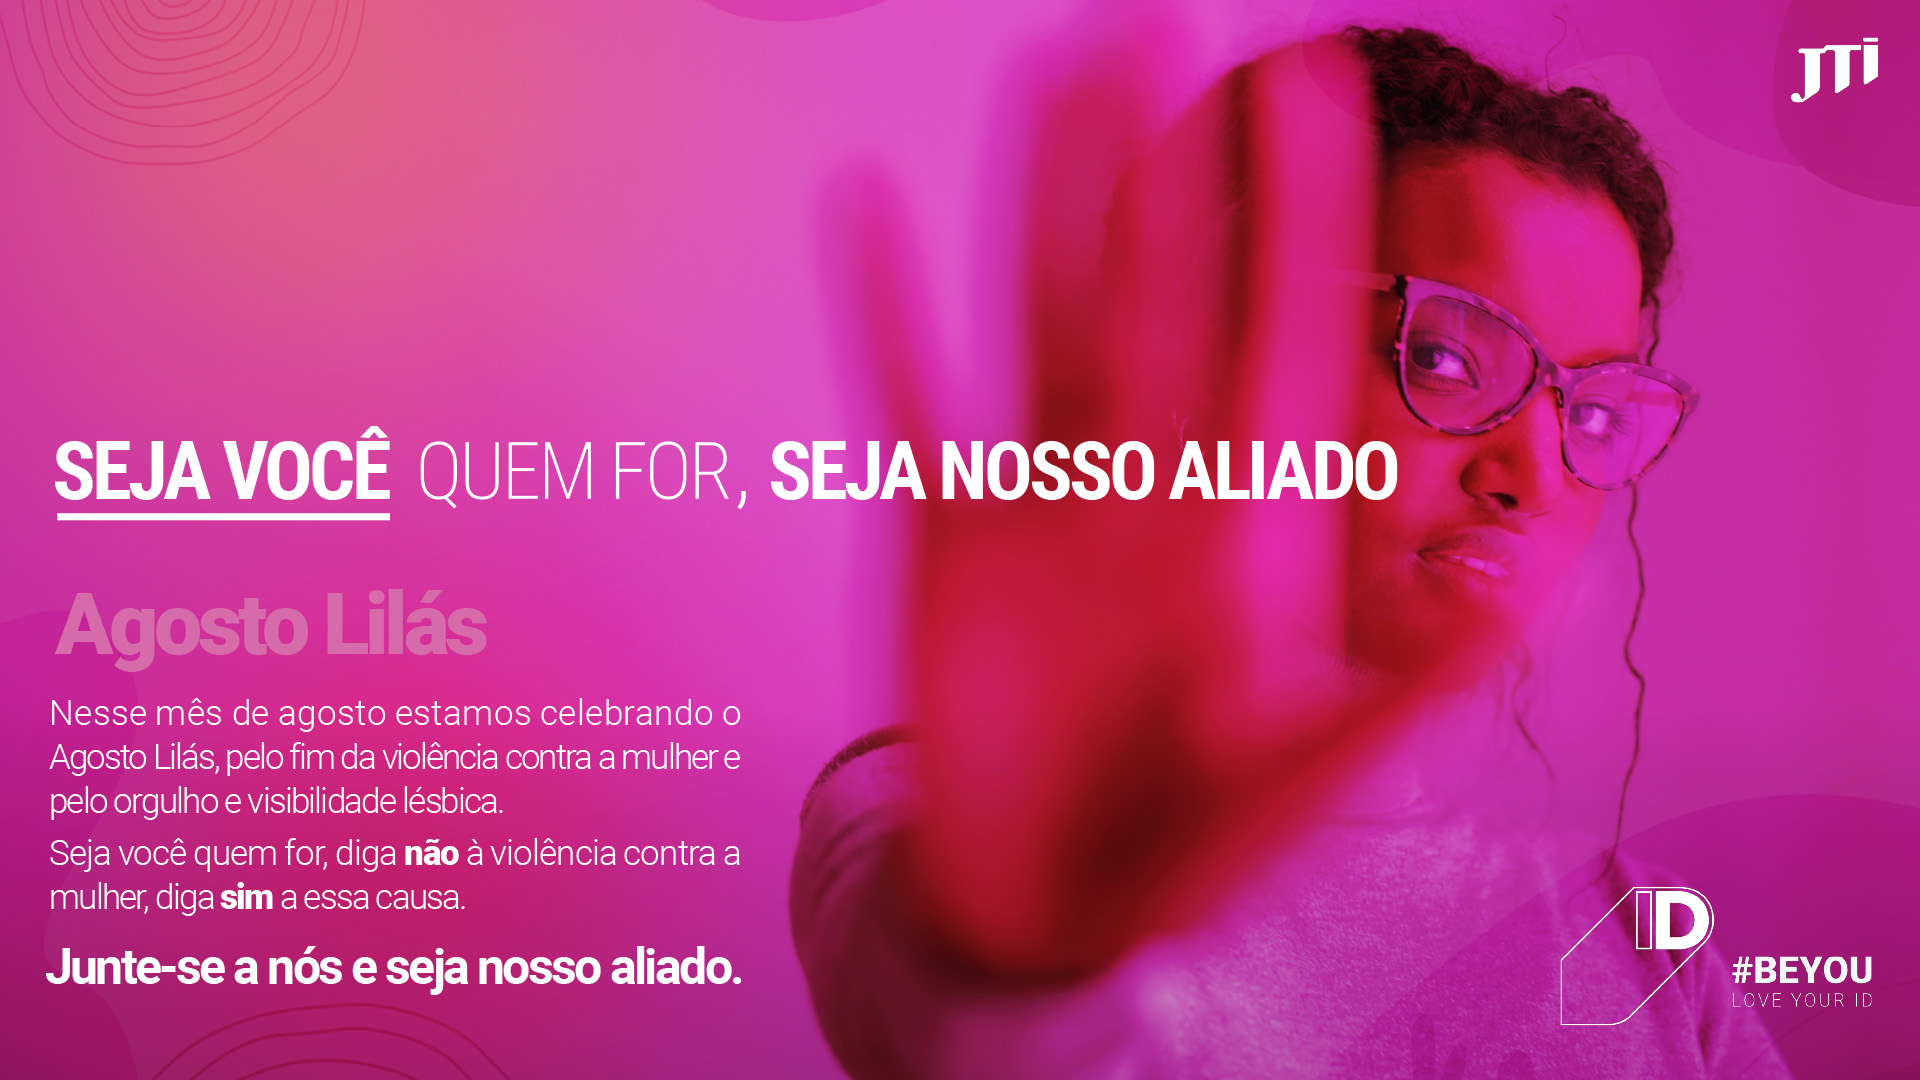 Imagem da identidade visual da campanha de Agosto Lilás JTI, com uma moça com a mão em posição de pare.